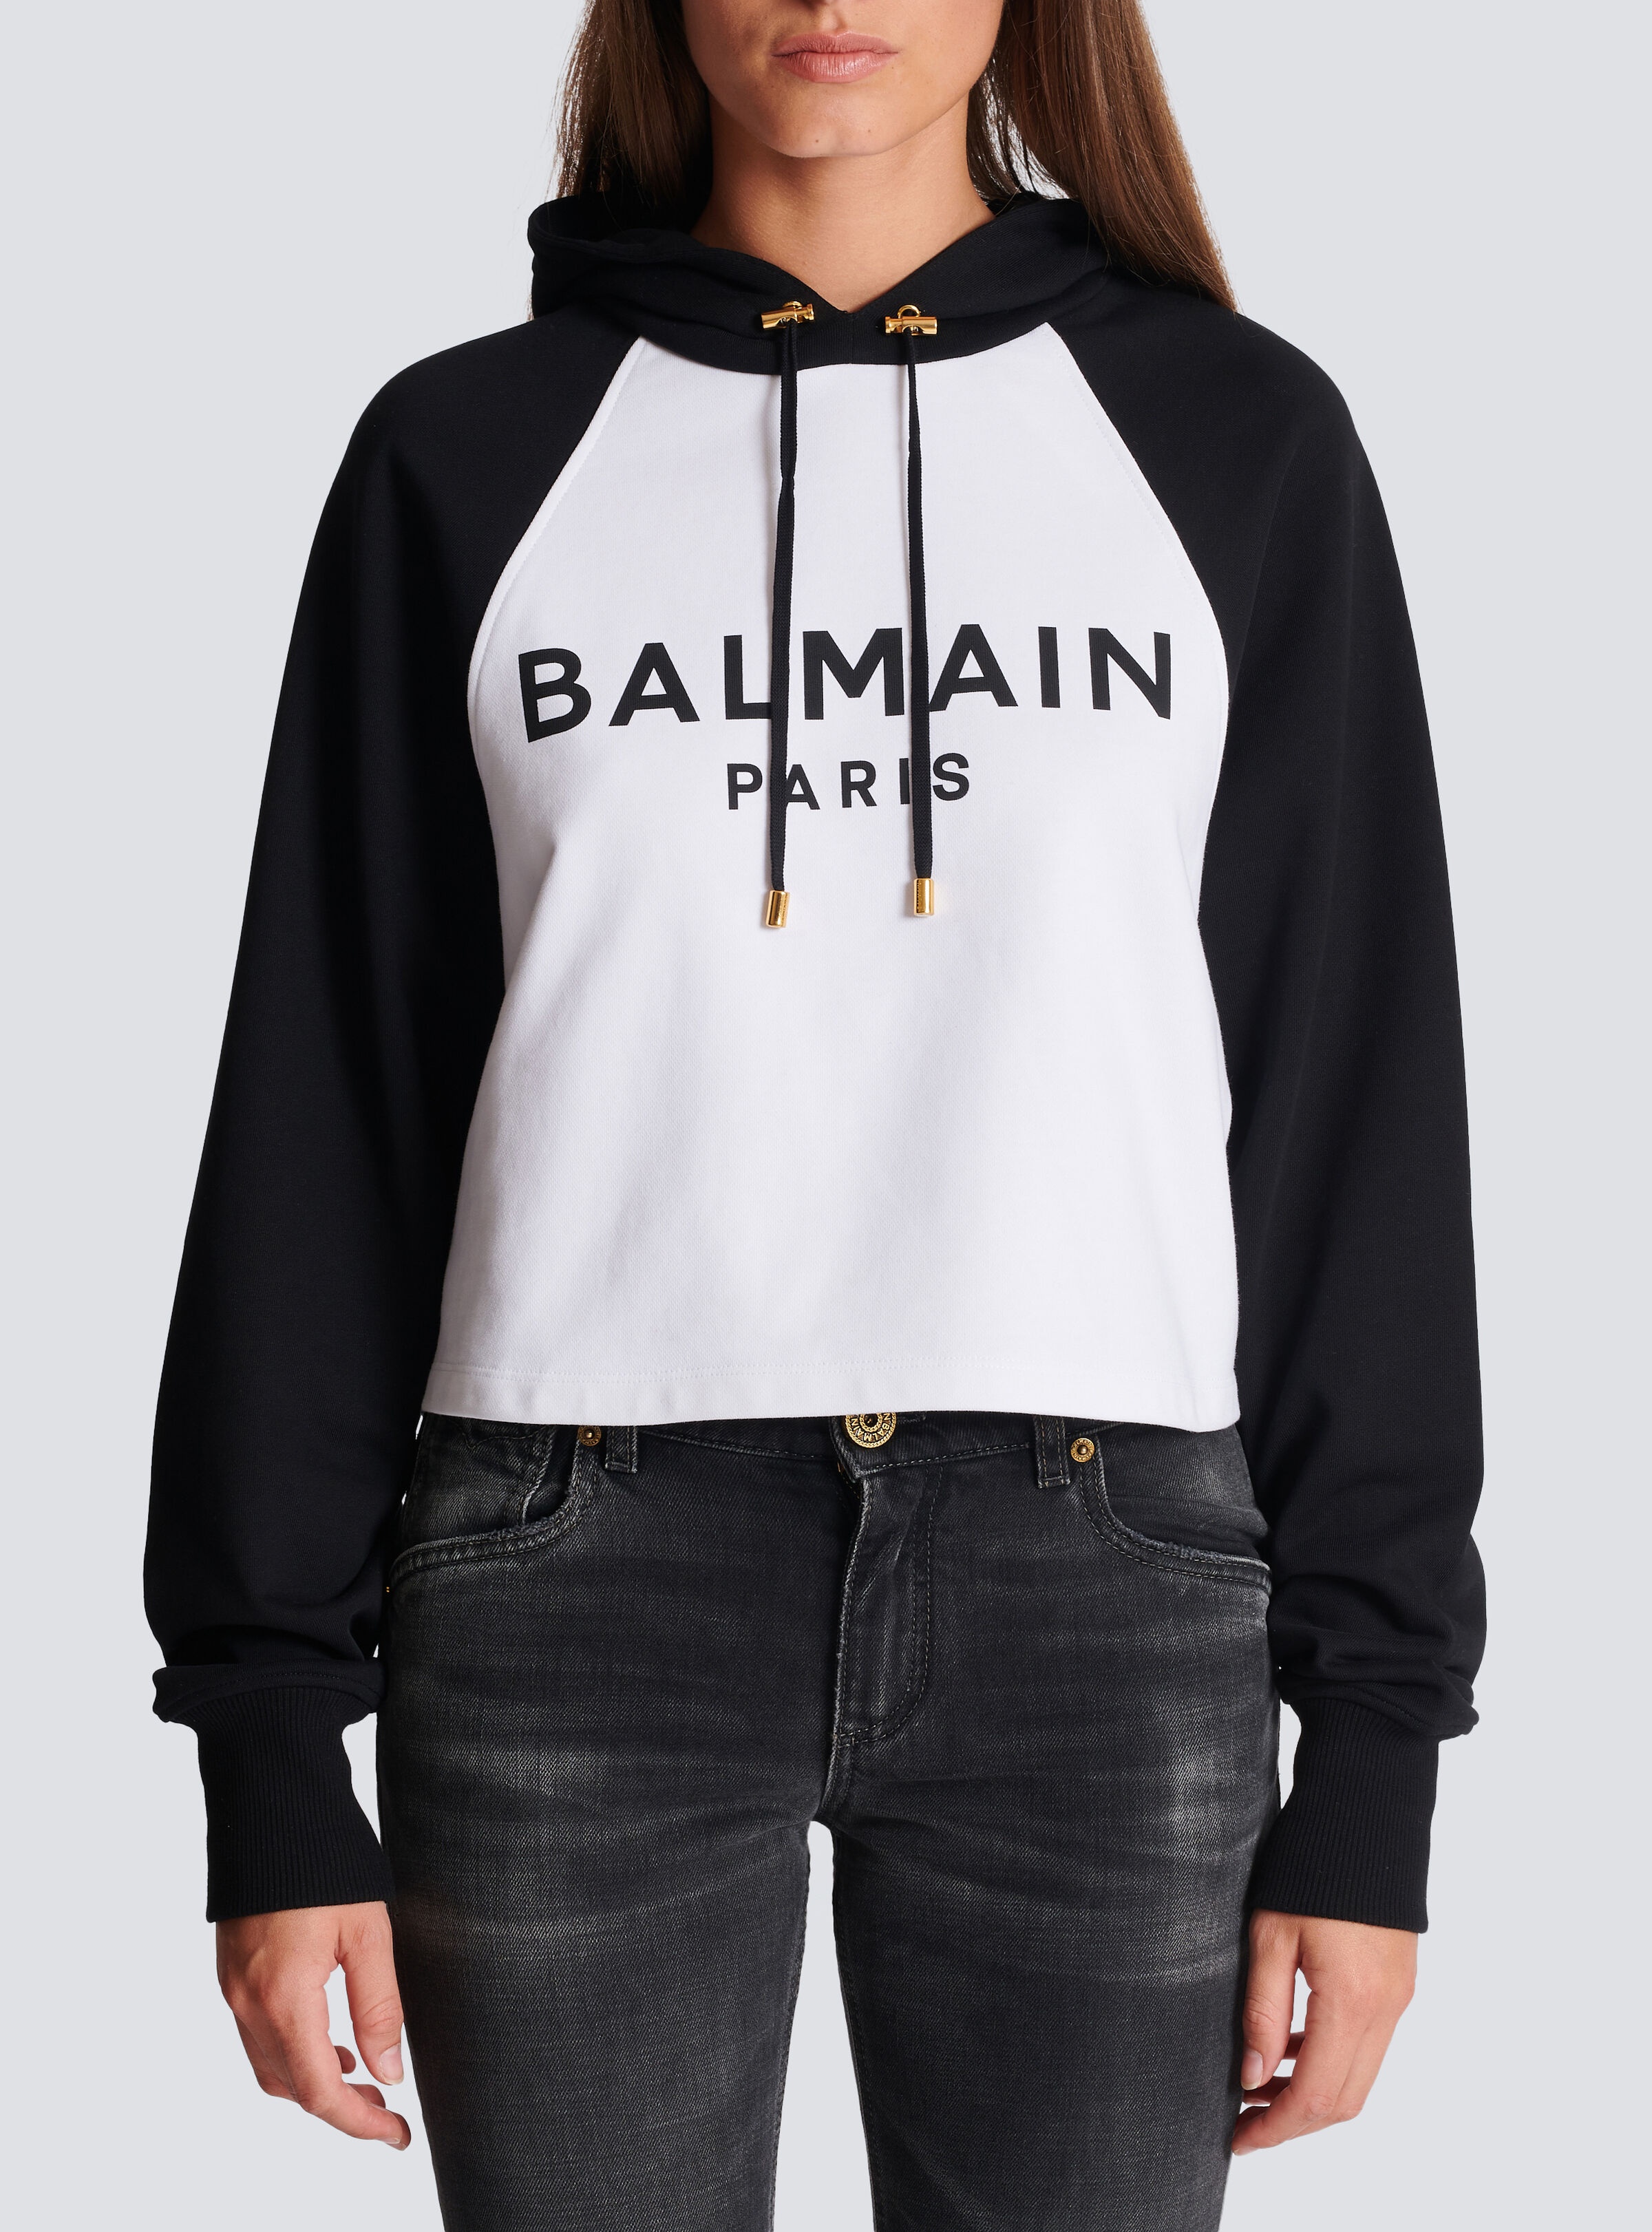 Balmain Paris hoodie - 5